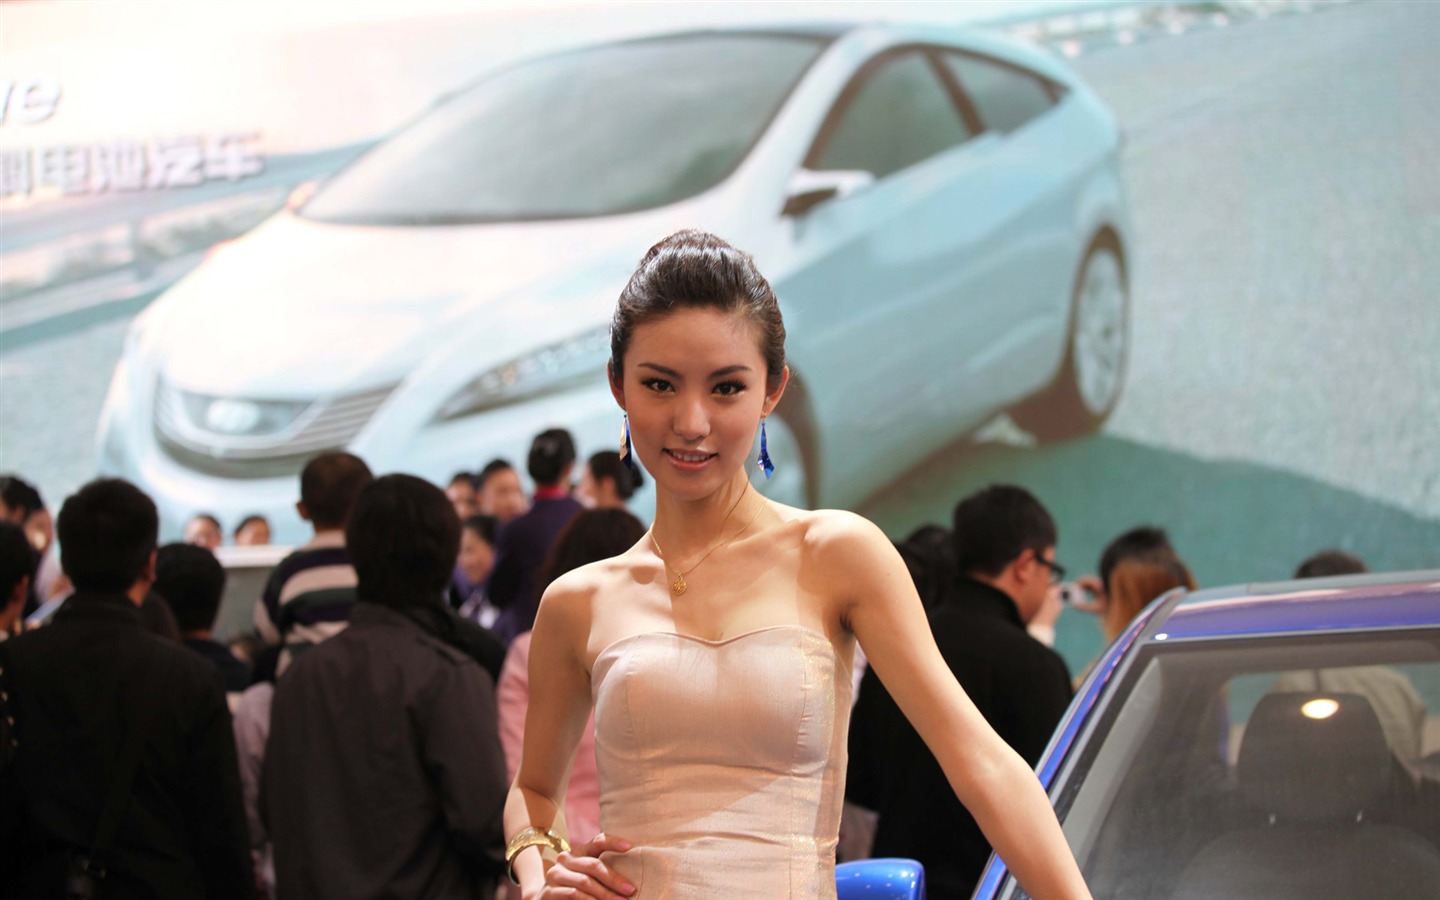 2010 v Pekingu Mezinárodním autosalonu krása (2) (vítr honí mraky práce) #15 - 1440x900